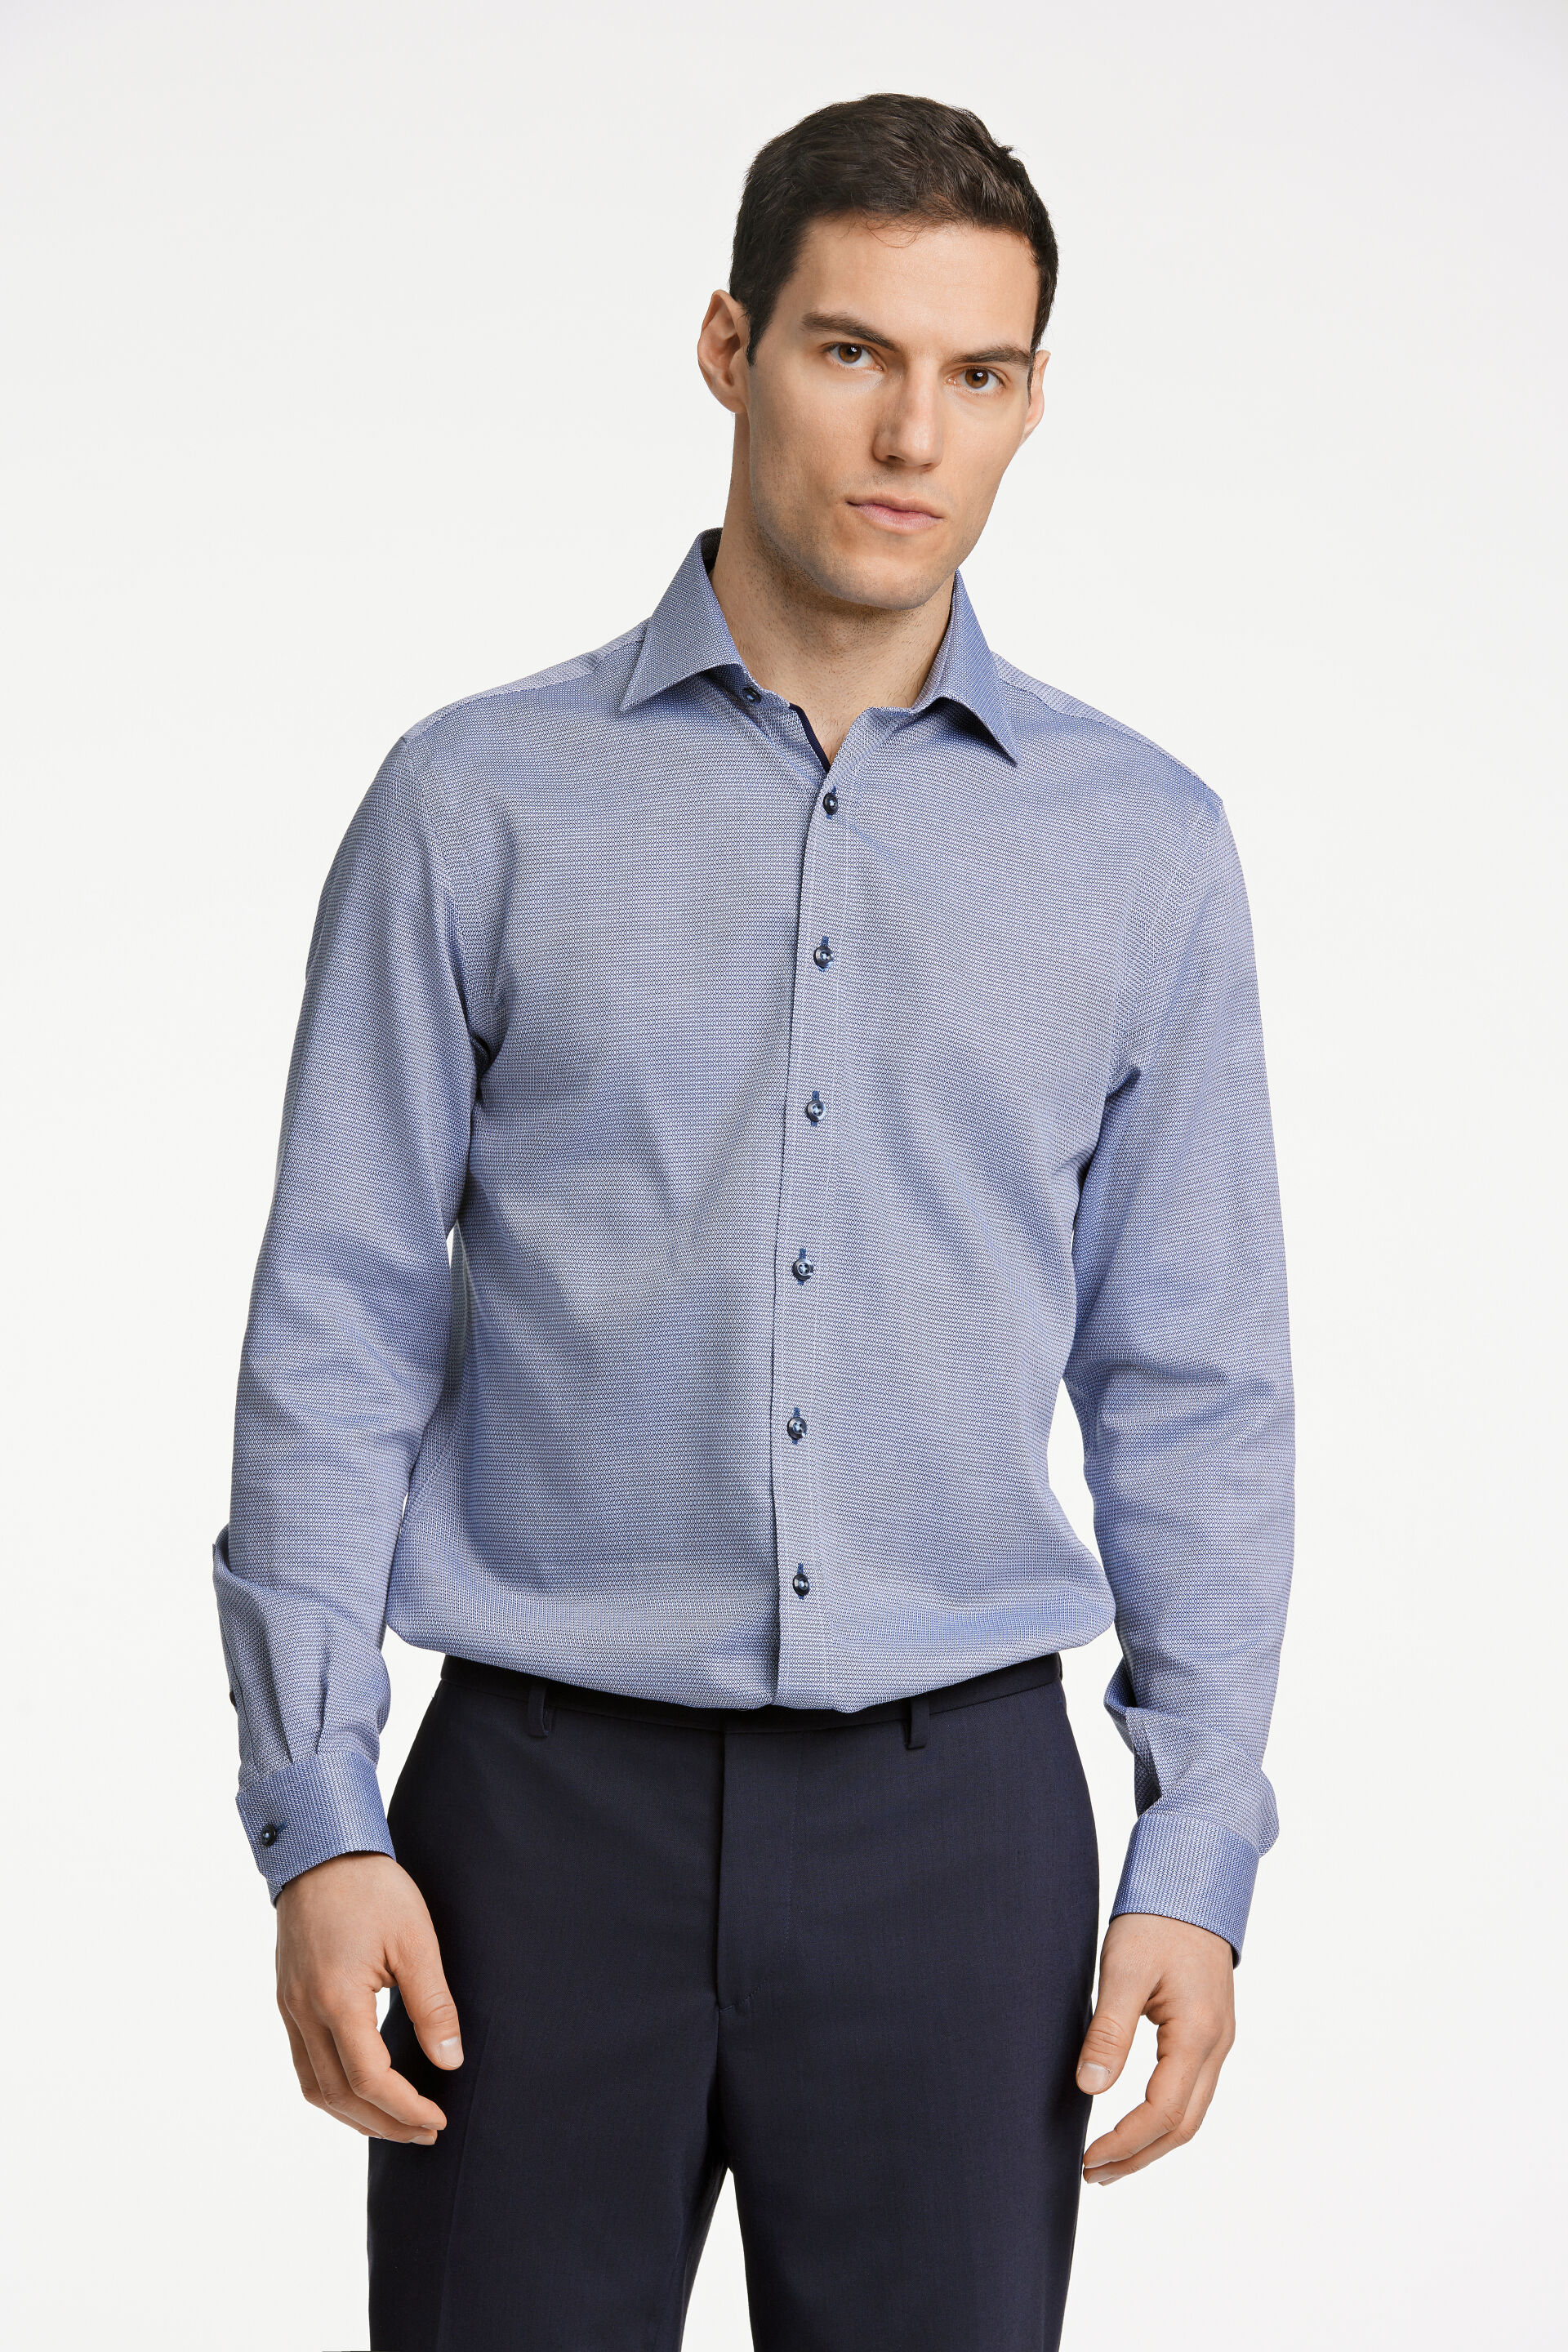 Business casual shirt Business casual shirt Blue 30-242178